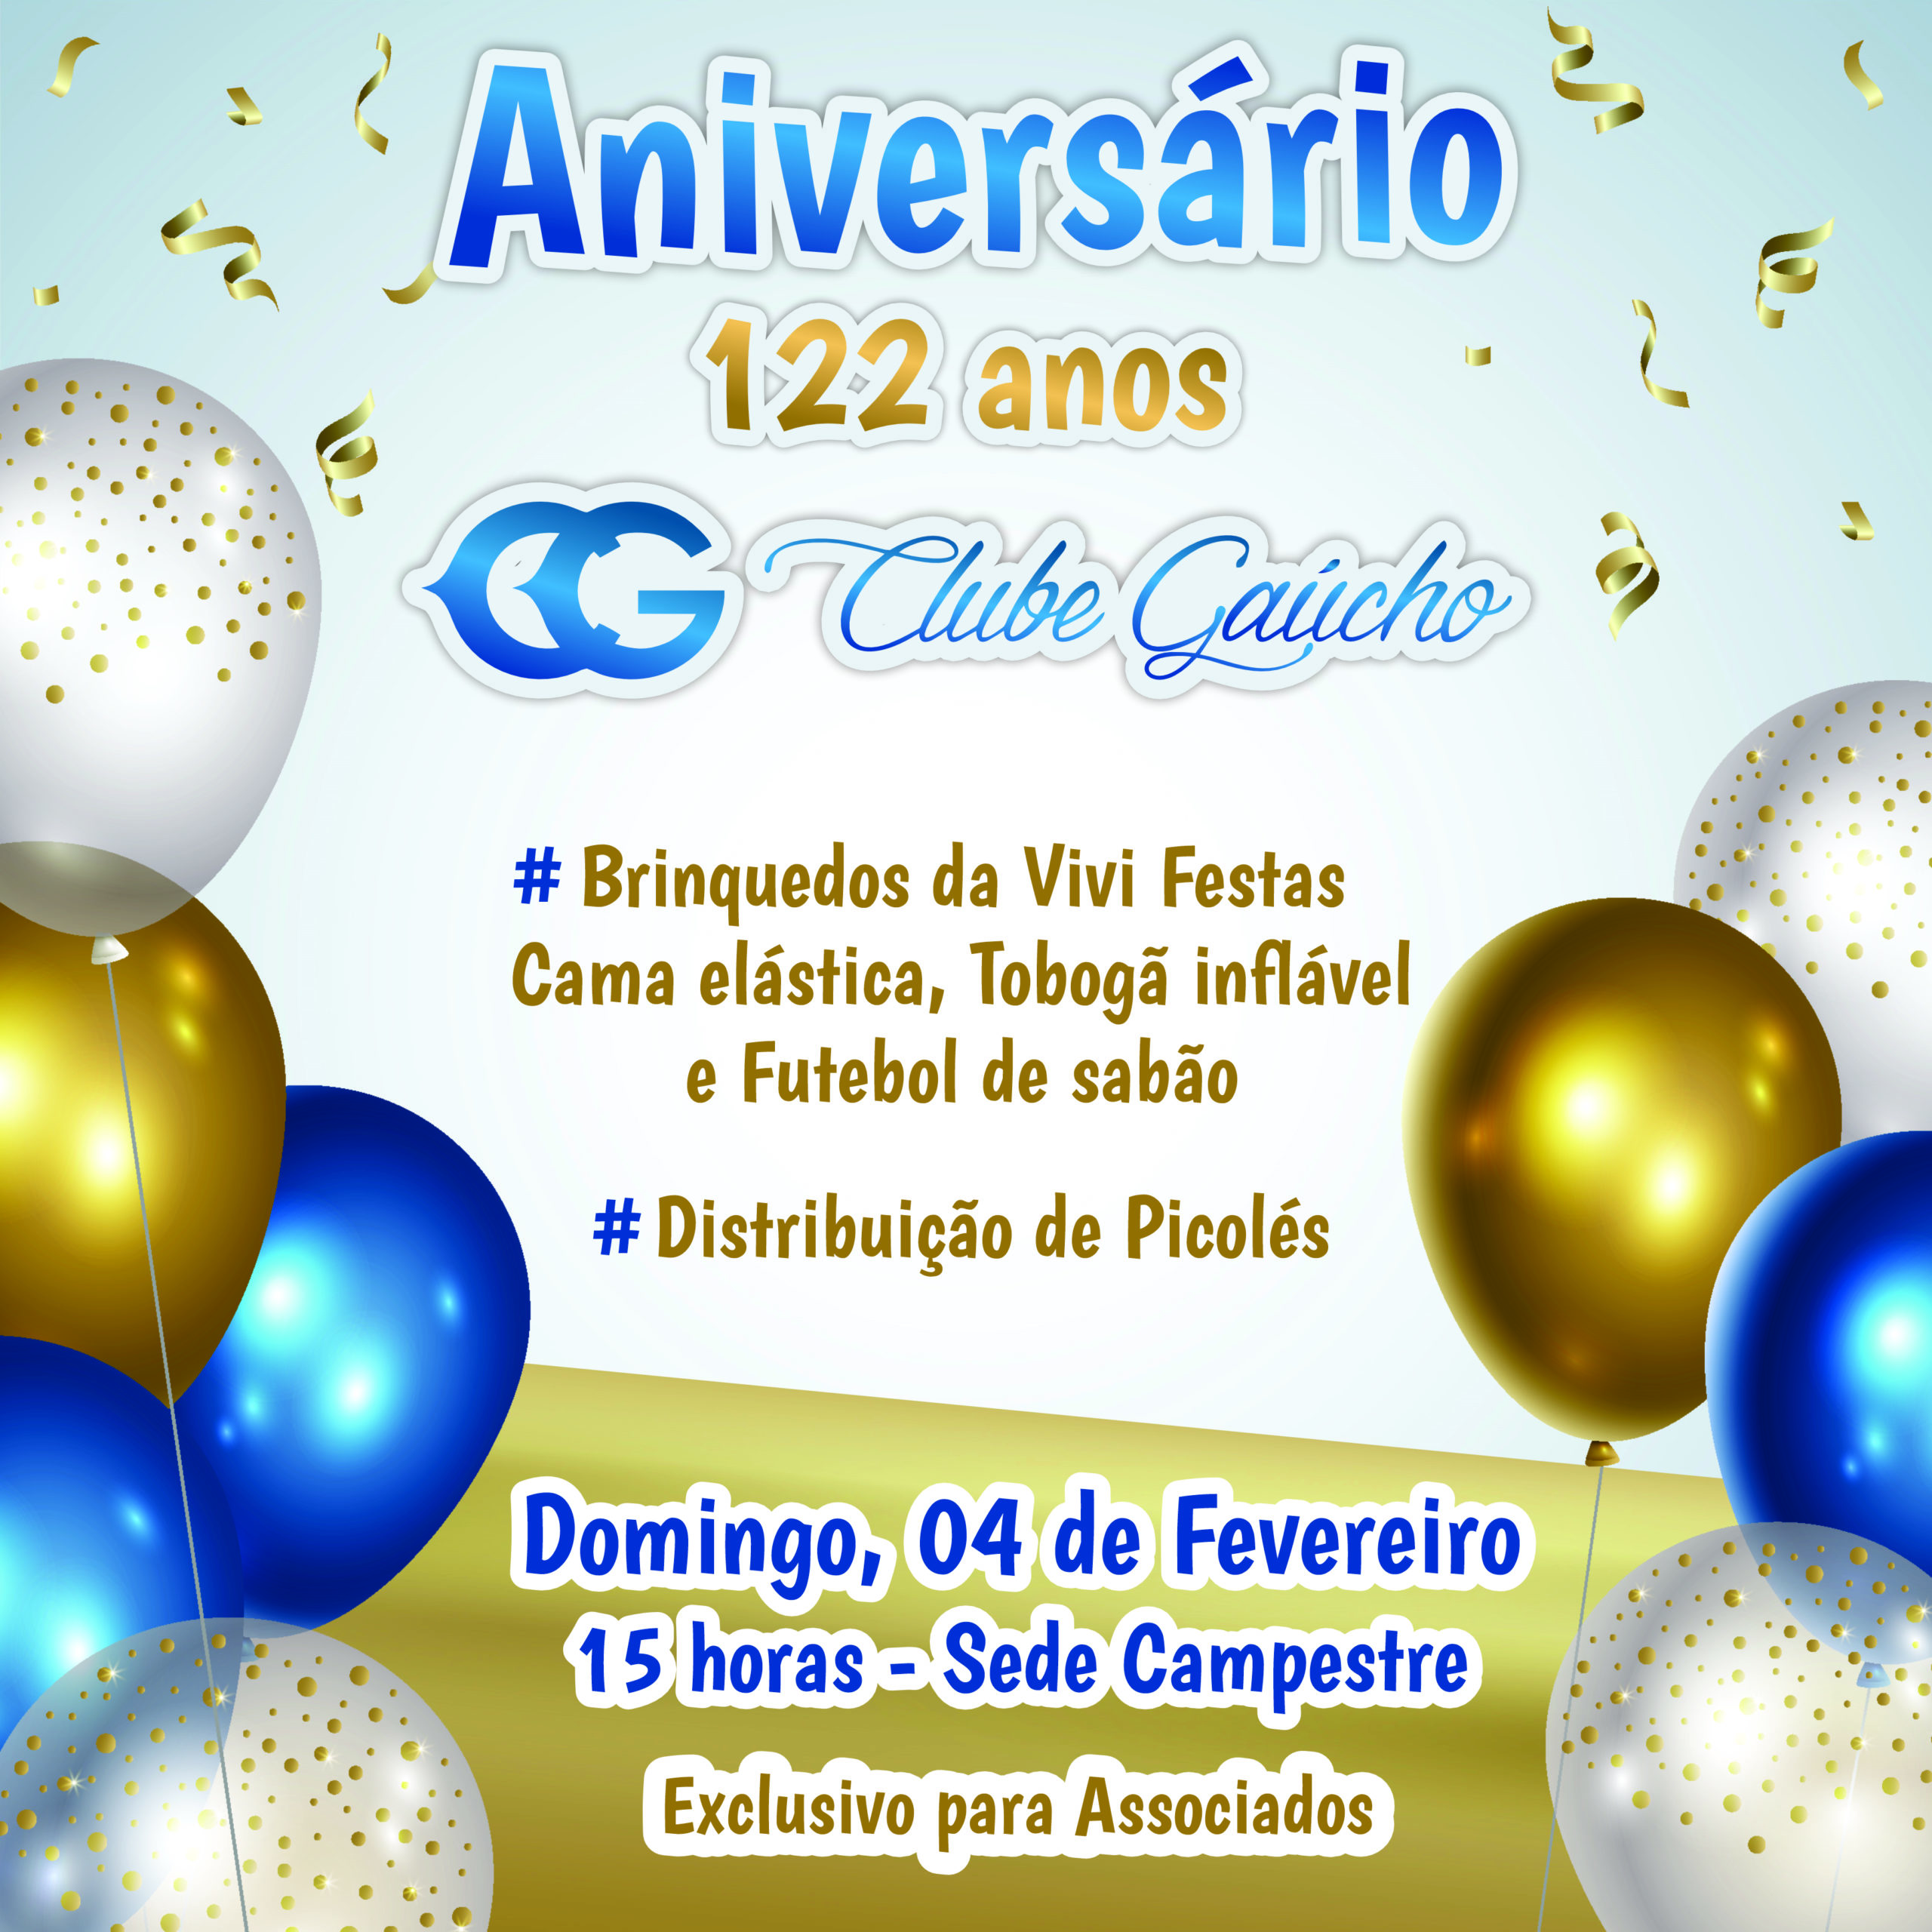 Aniversário do Clube Gaúcho 122 anos!